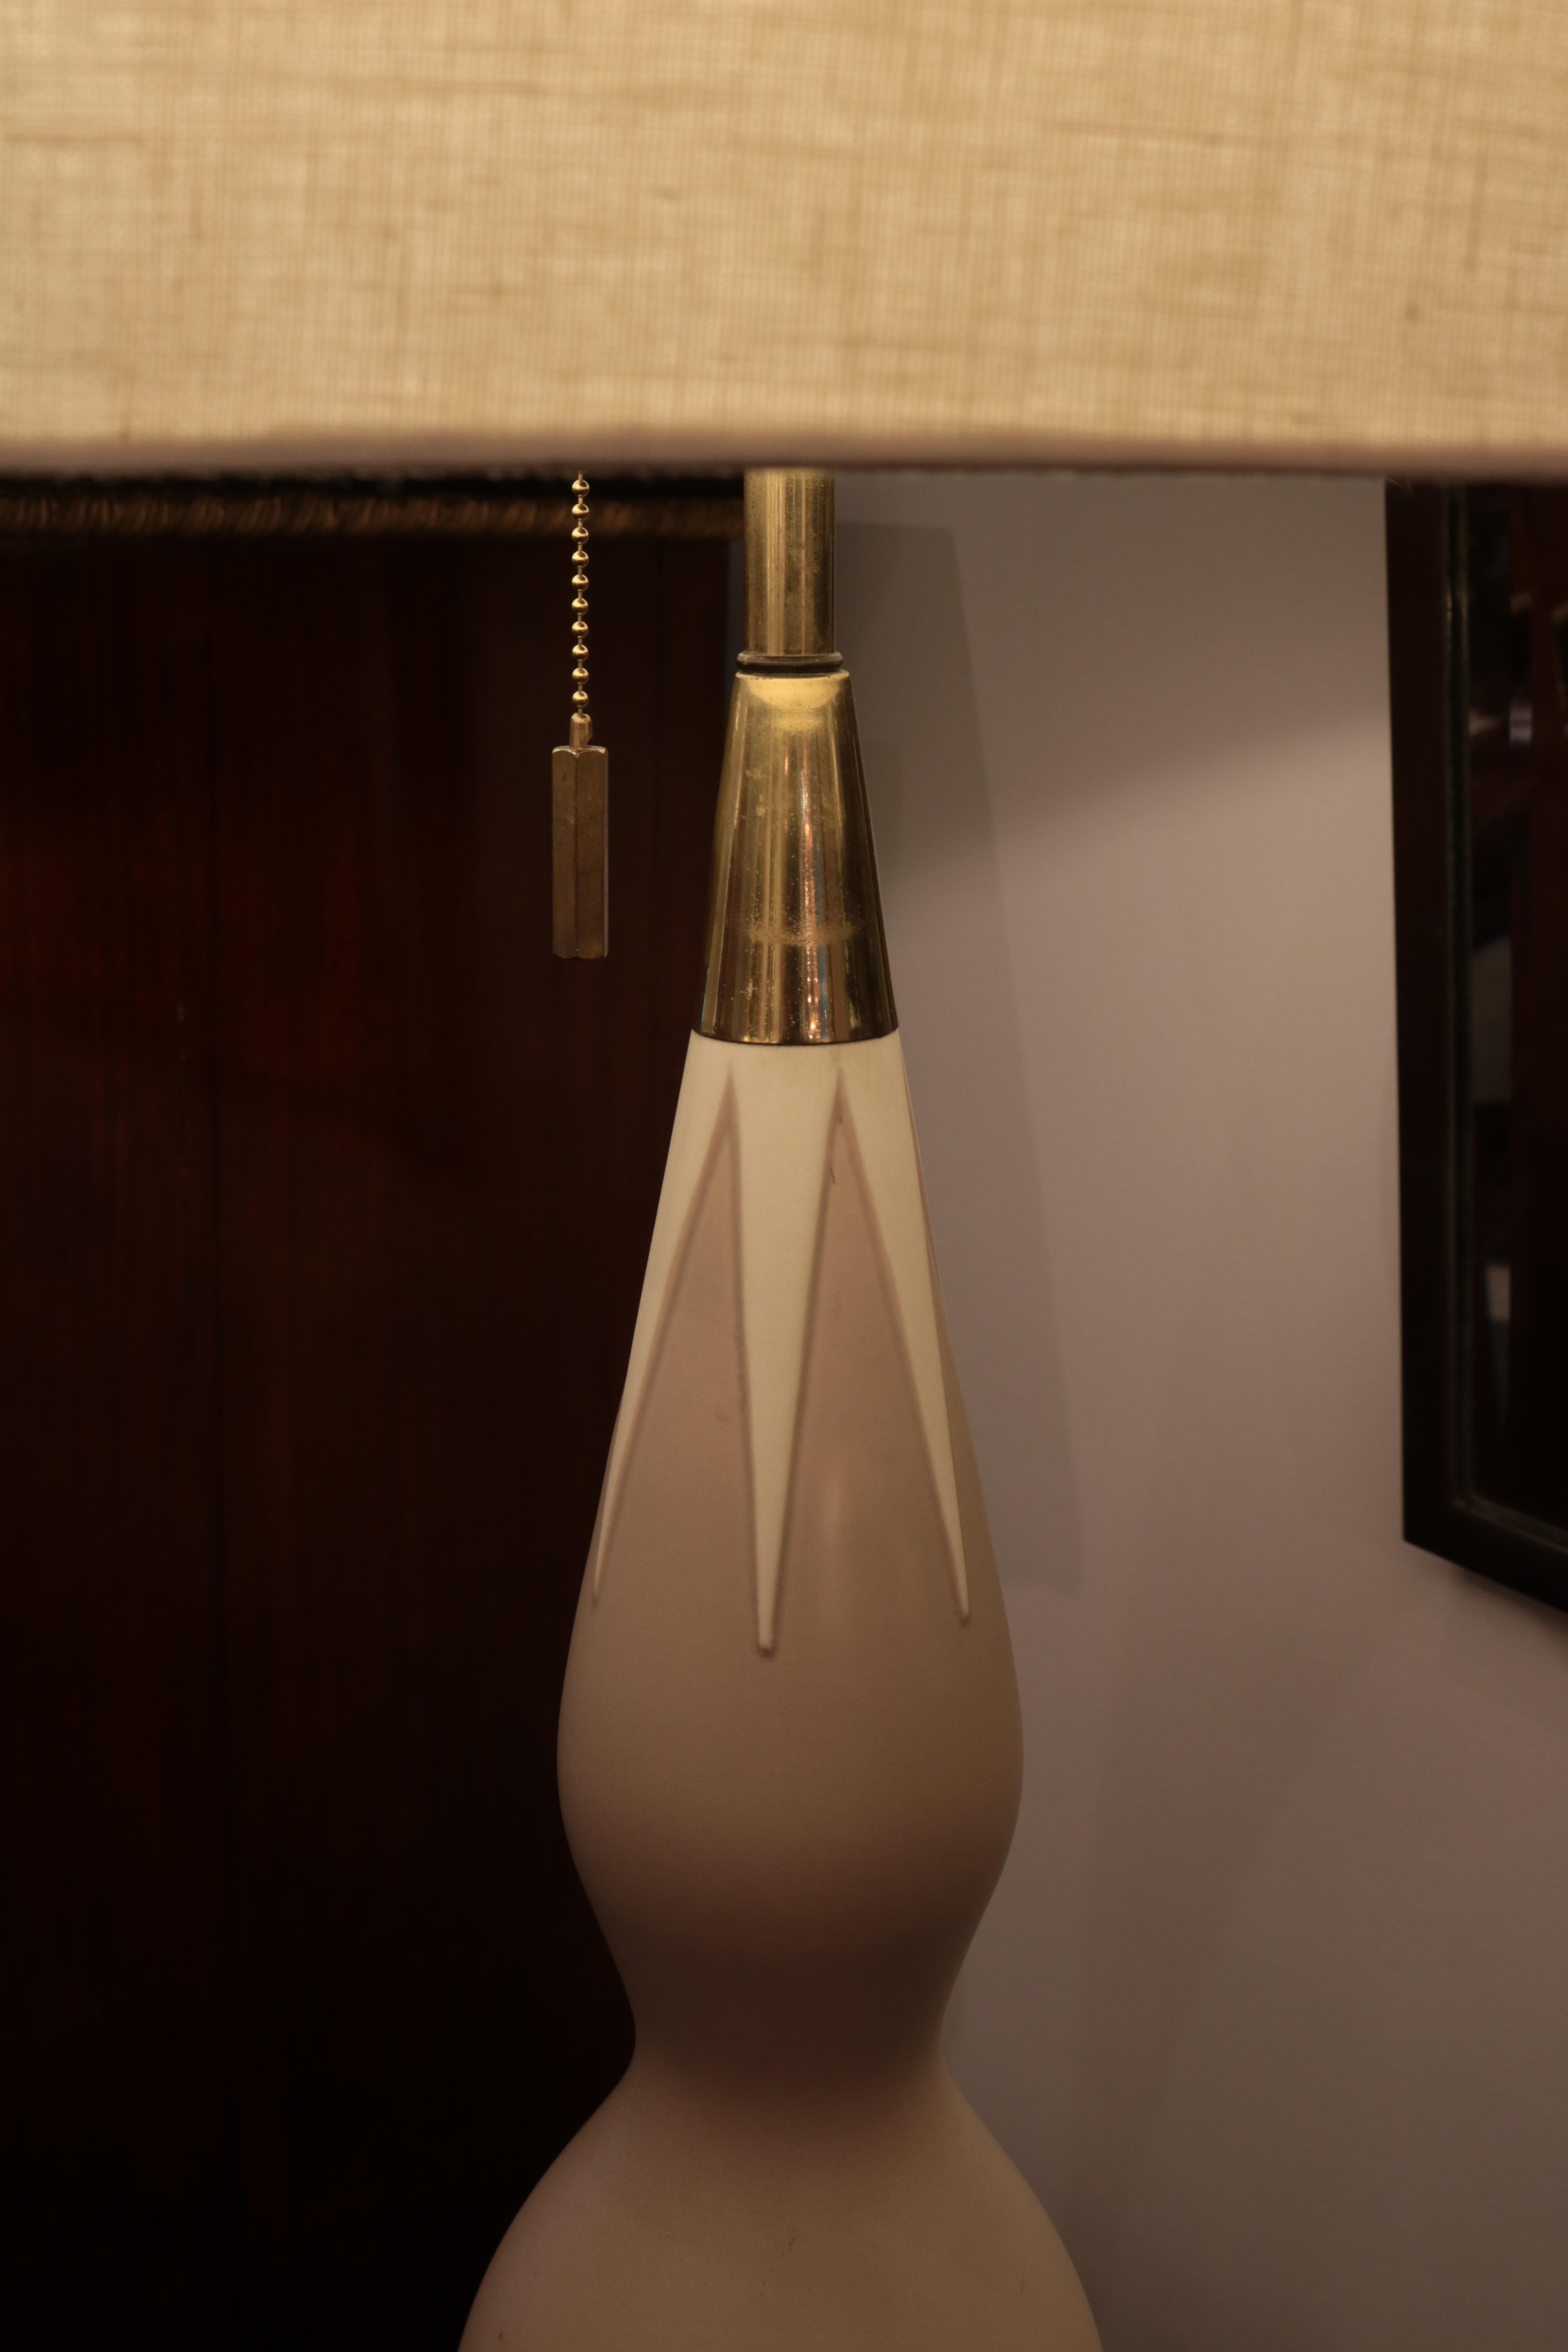 Lampe de table en céramique moderniste conçue par Gerald Thurston.
Forme en céramique crème et brune avec base et détails en laiton patiné.
   